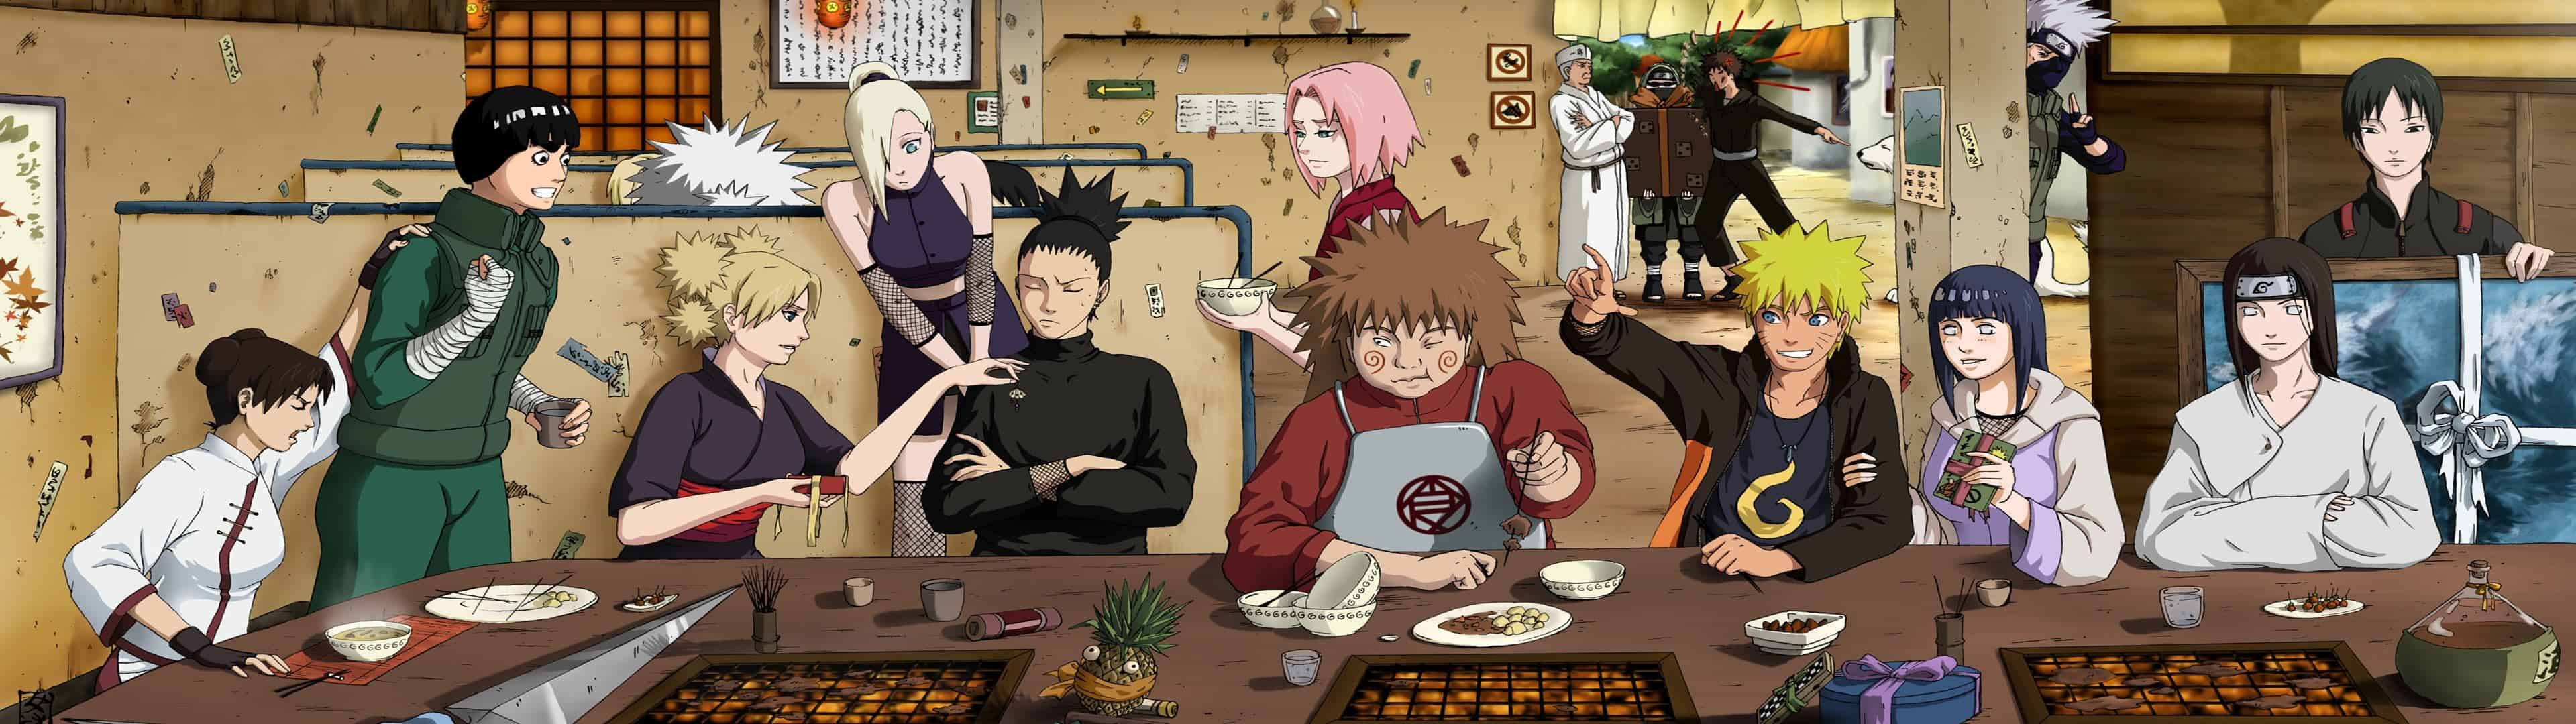 Naruto The Last Super Dual Monitor Wallpaper - Naruto The Last Supper -  3840x1080 Wallpaper 